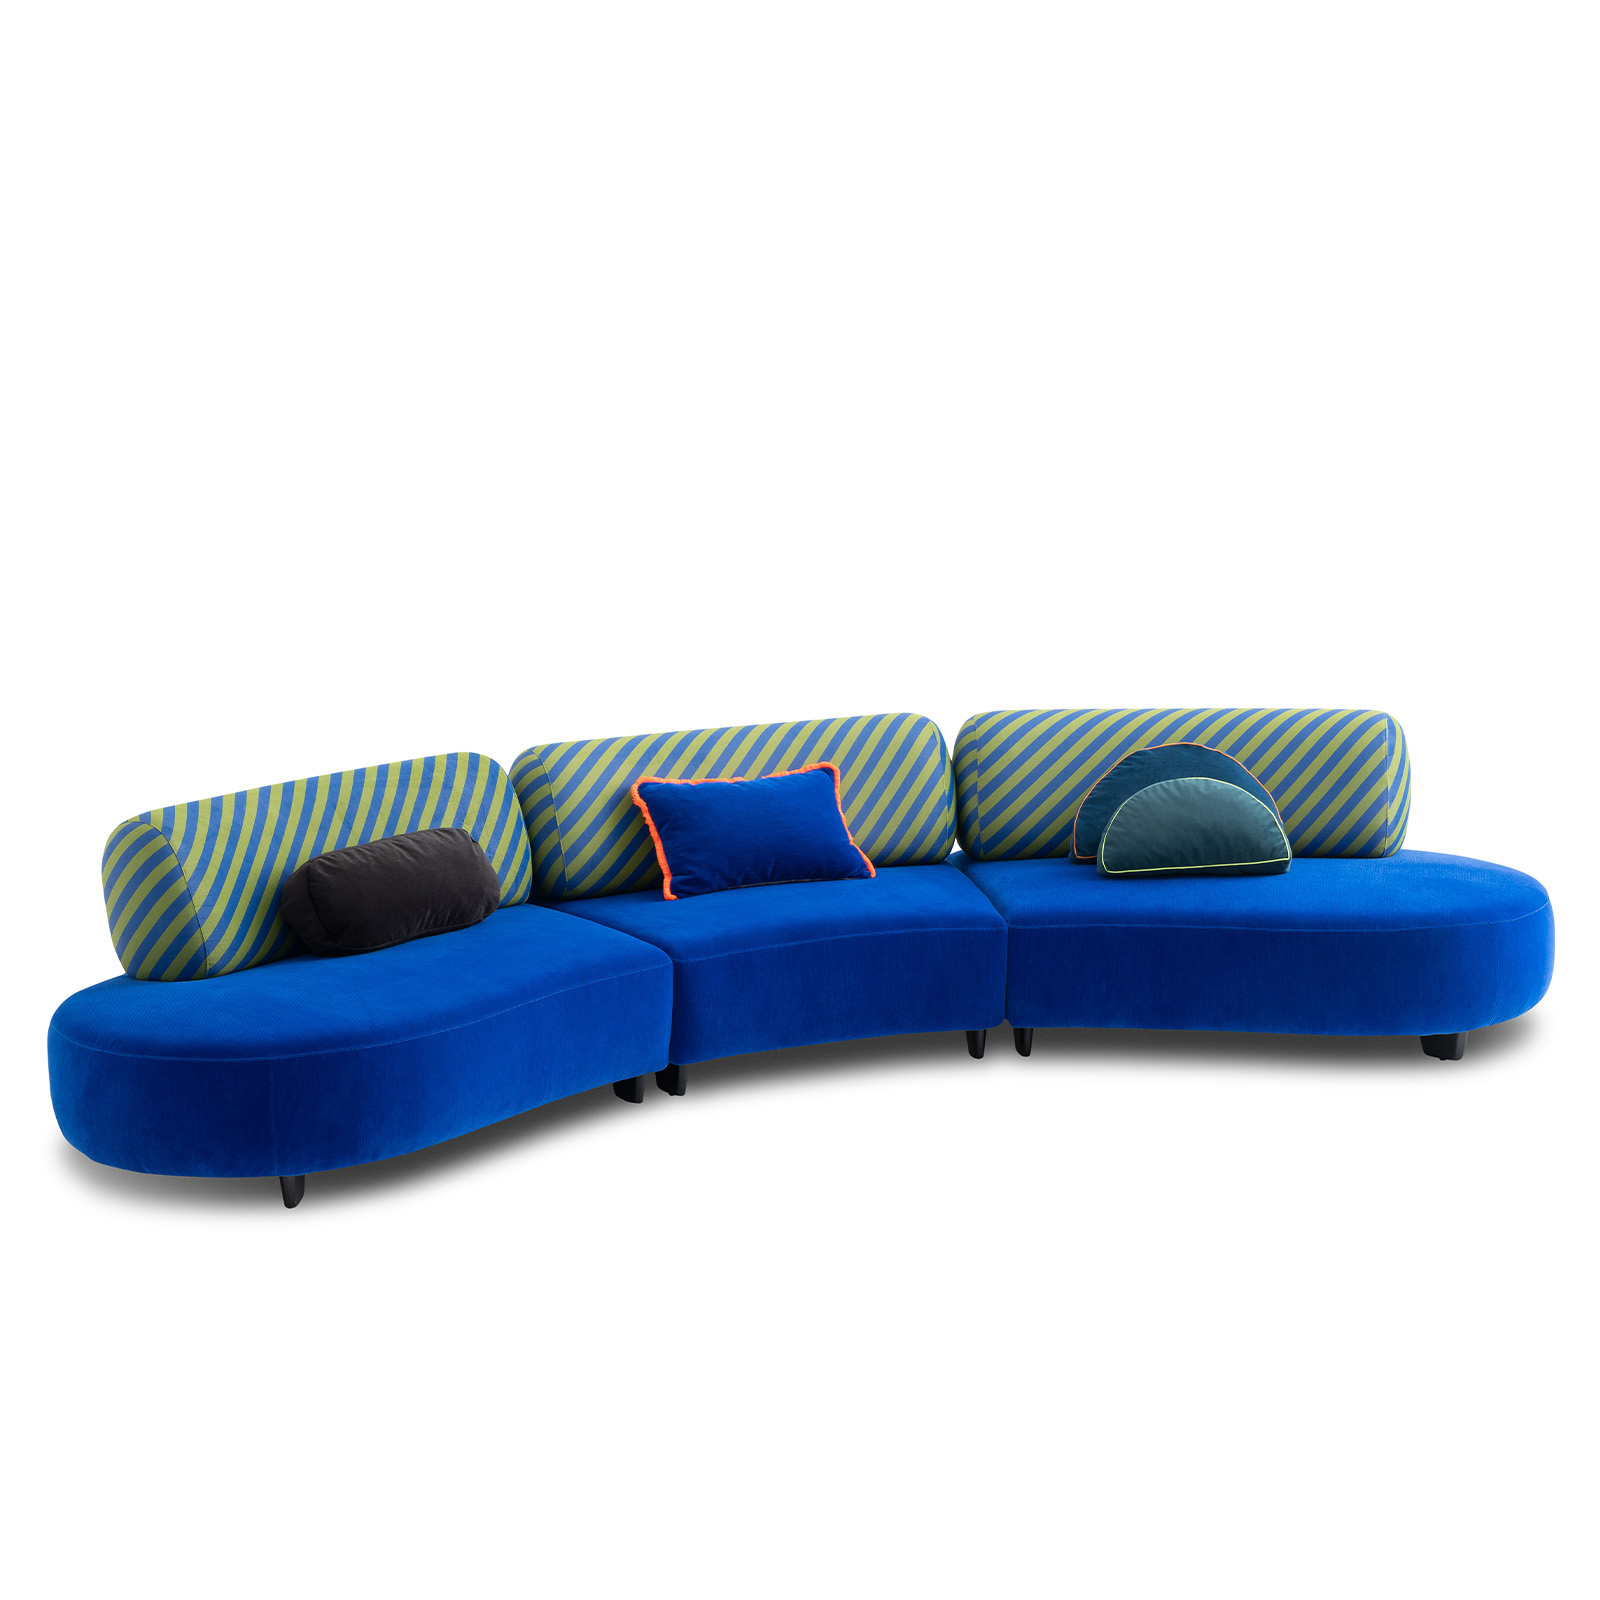 dark blue velvet sofa curved design modular